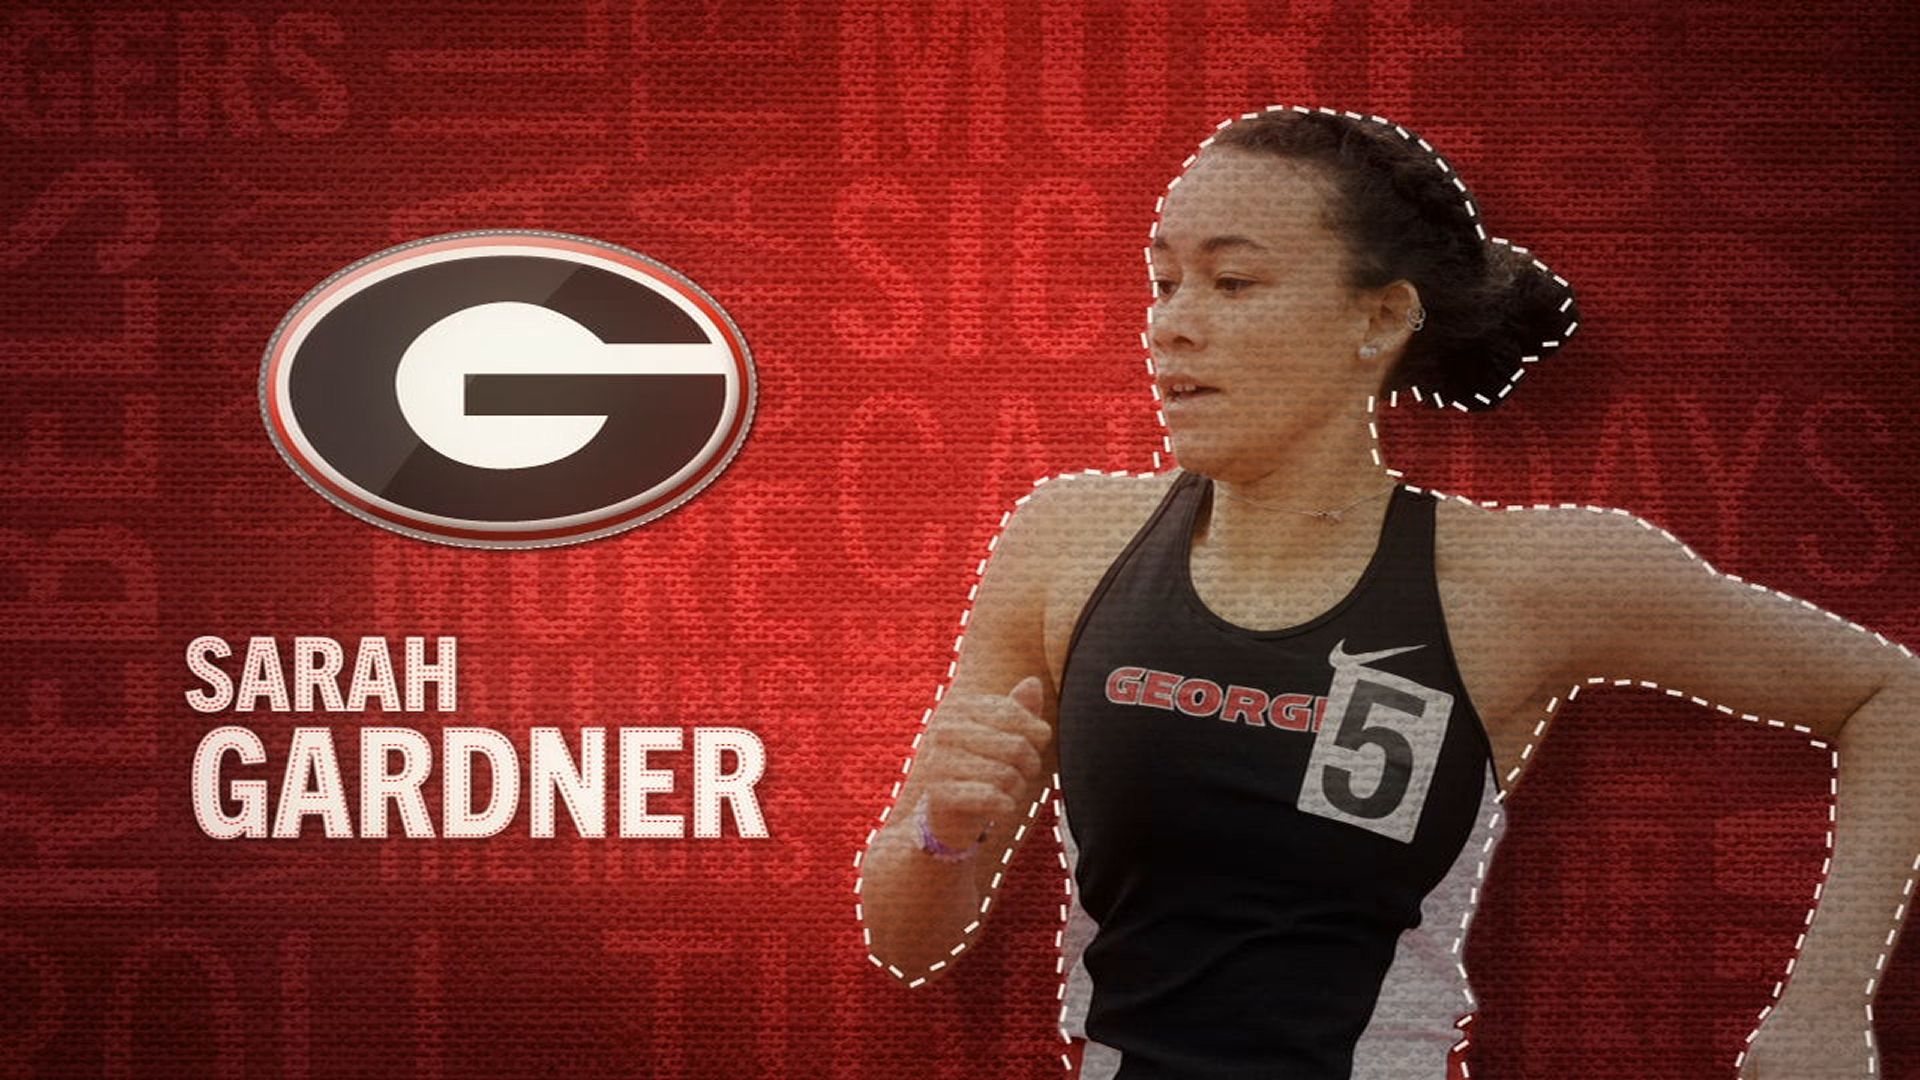 I am the SEC: Georgia's Sarah Gardner